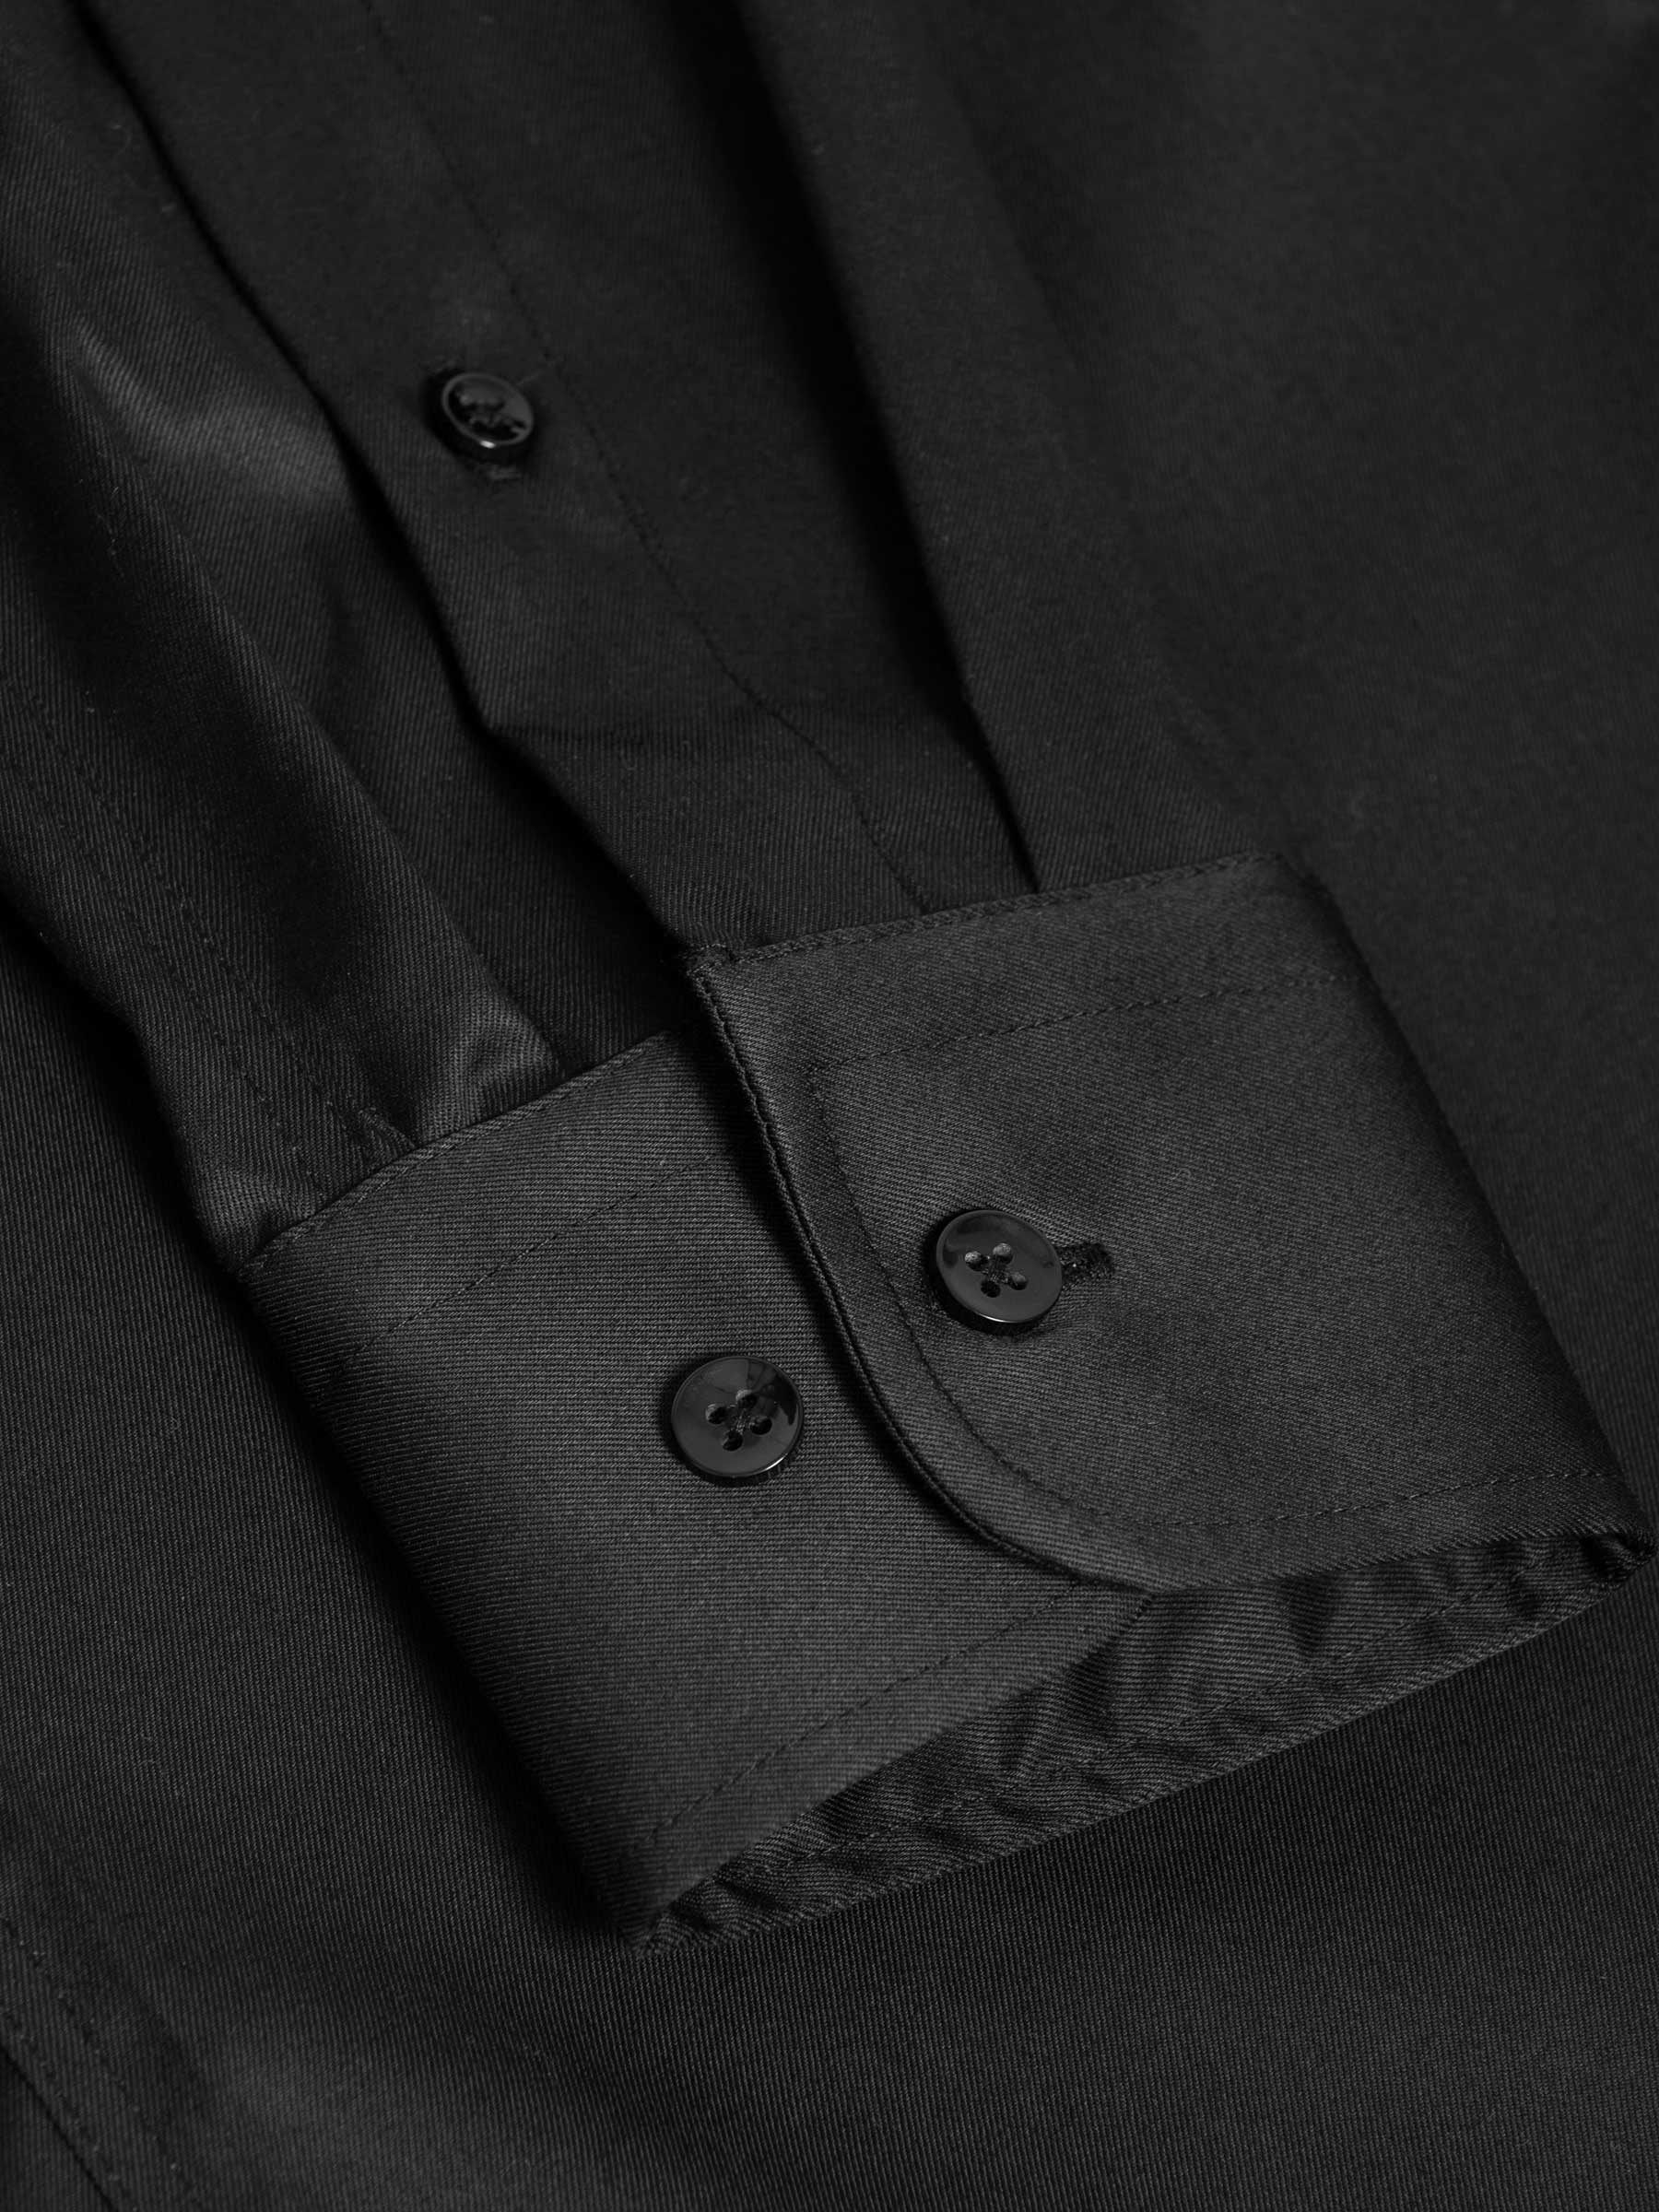 Shirt Long Sleeve 75665 Harvery Specter Black